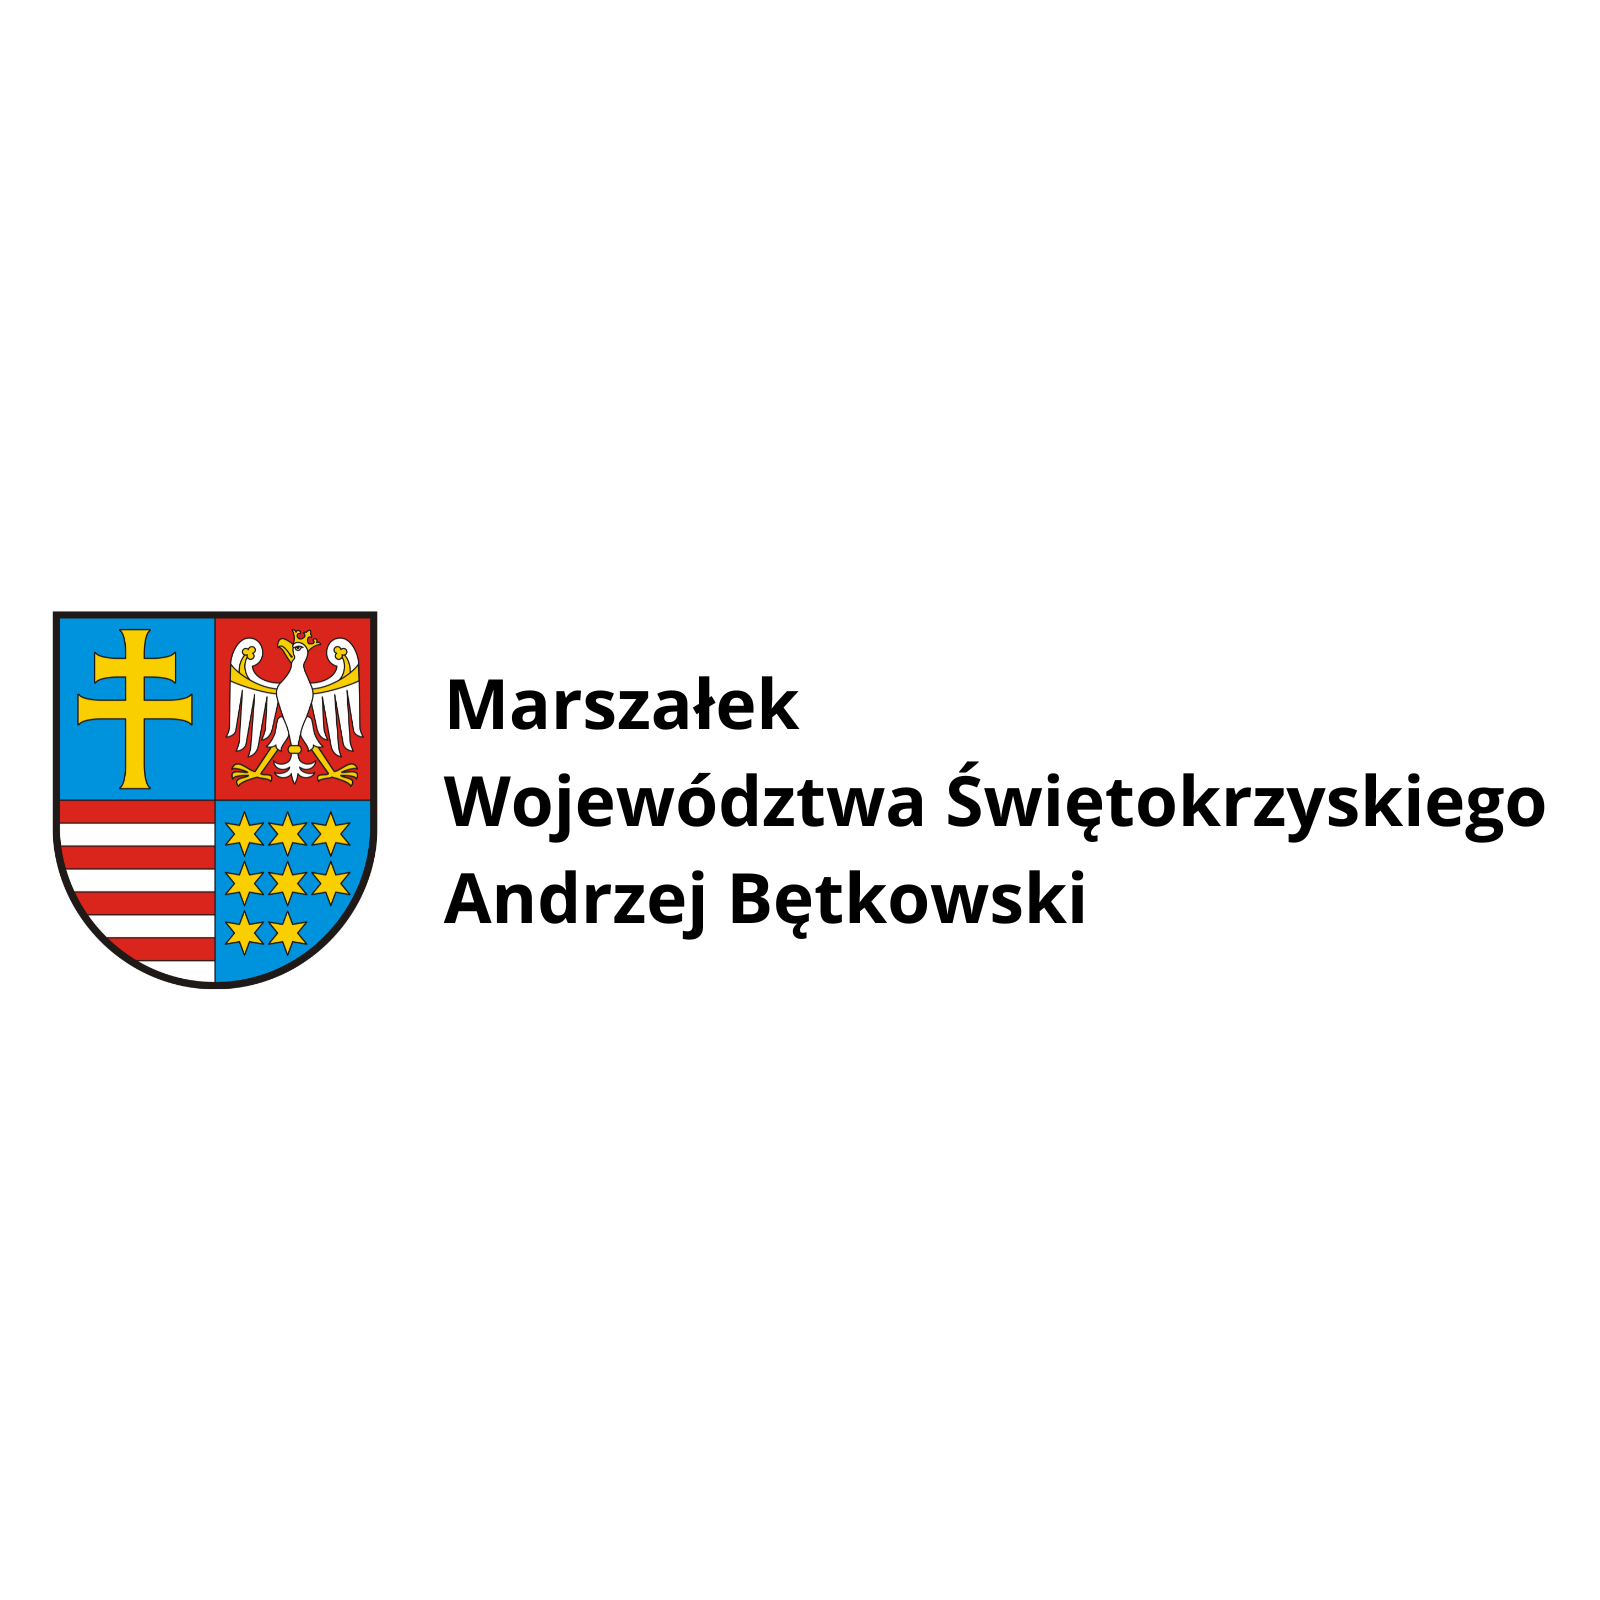 Marszałek Województwa Świętokrzyskiego Andrzej Bętkowski